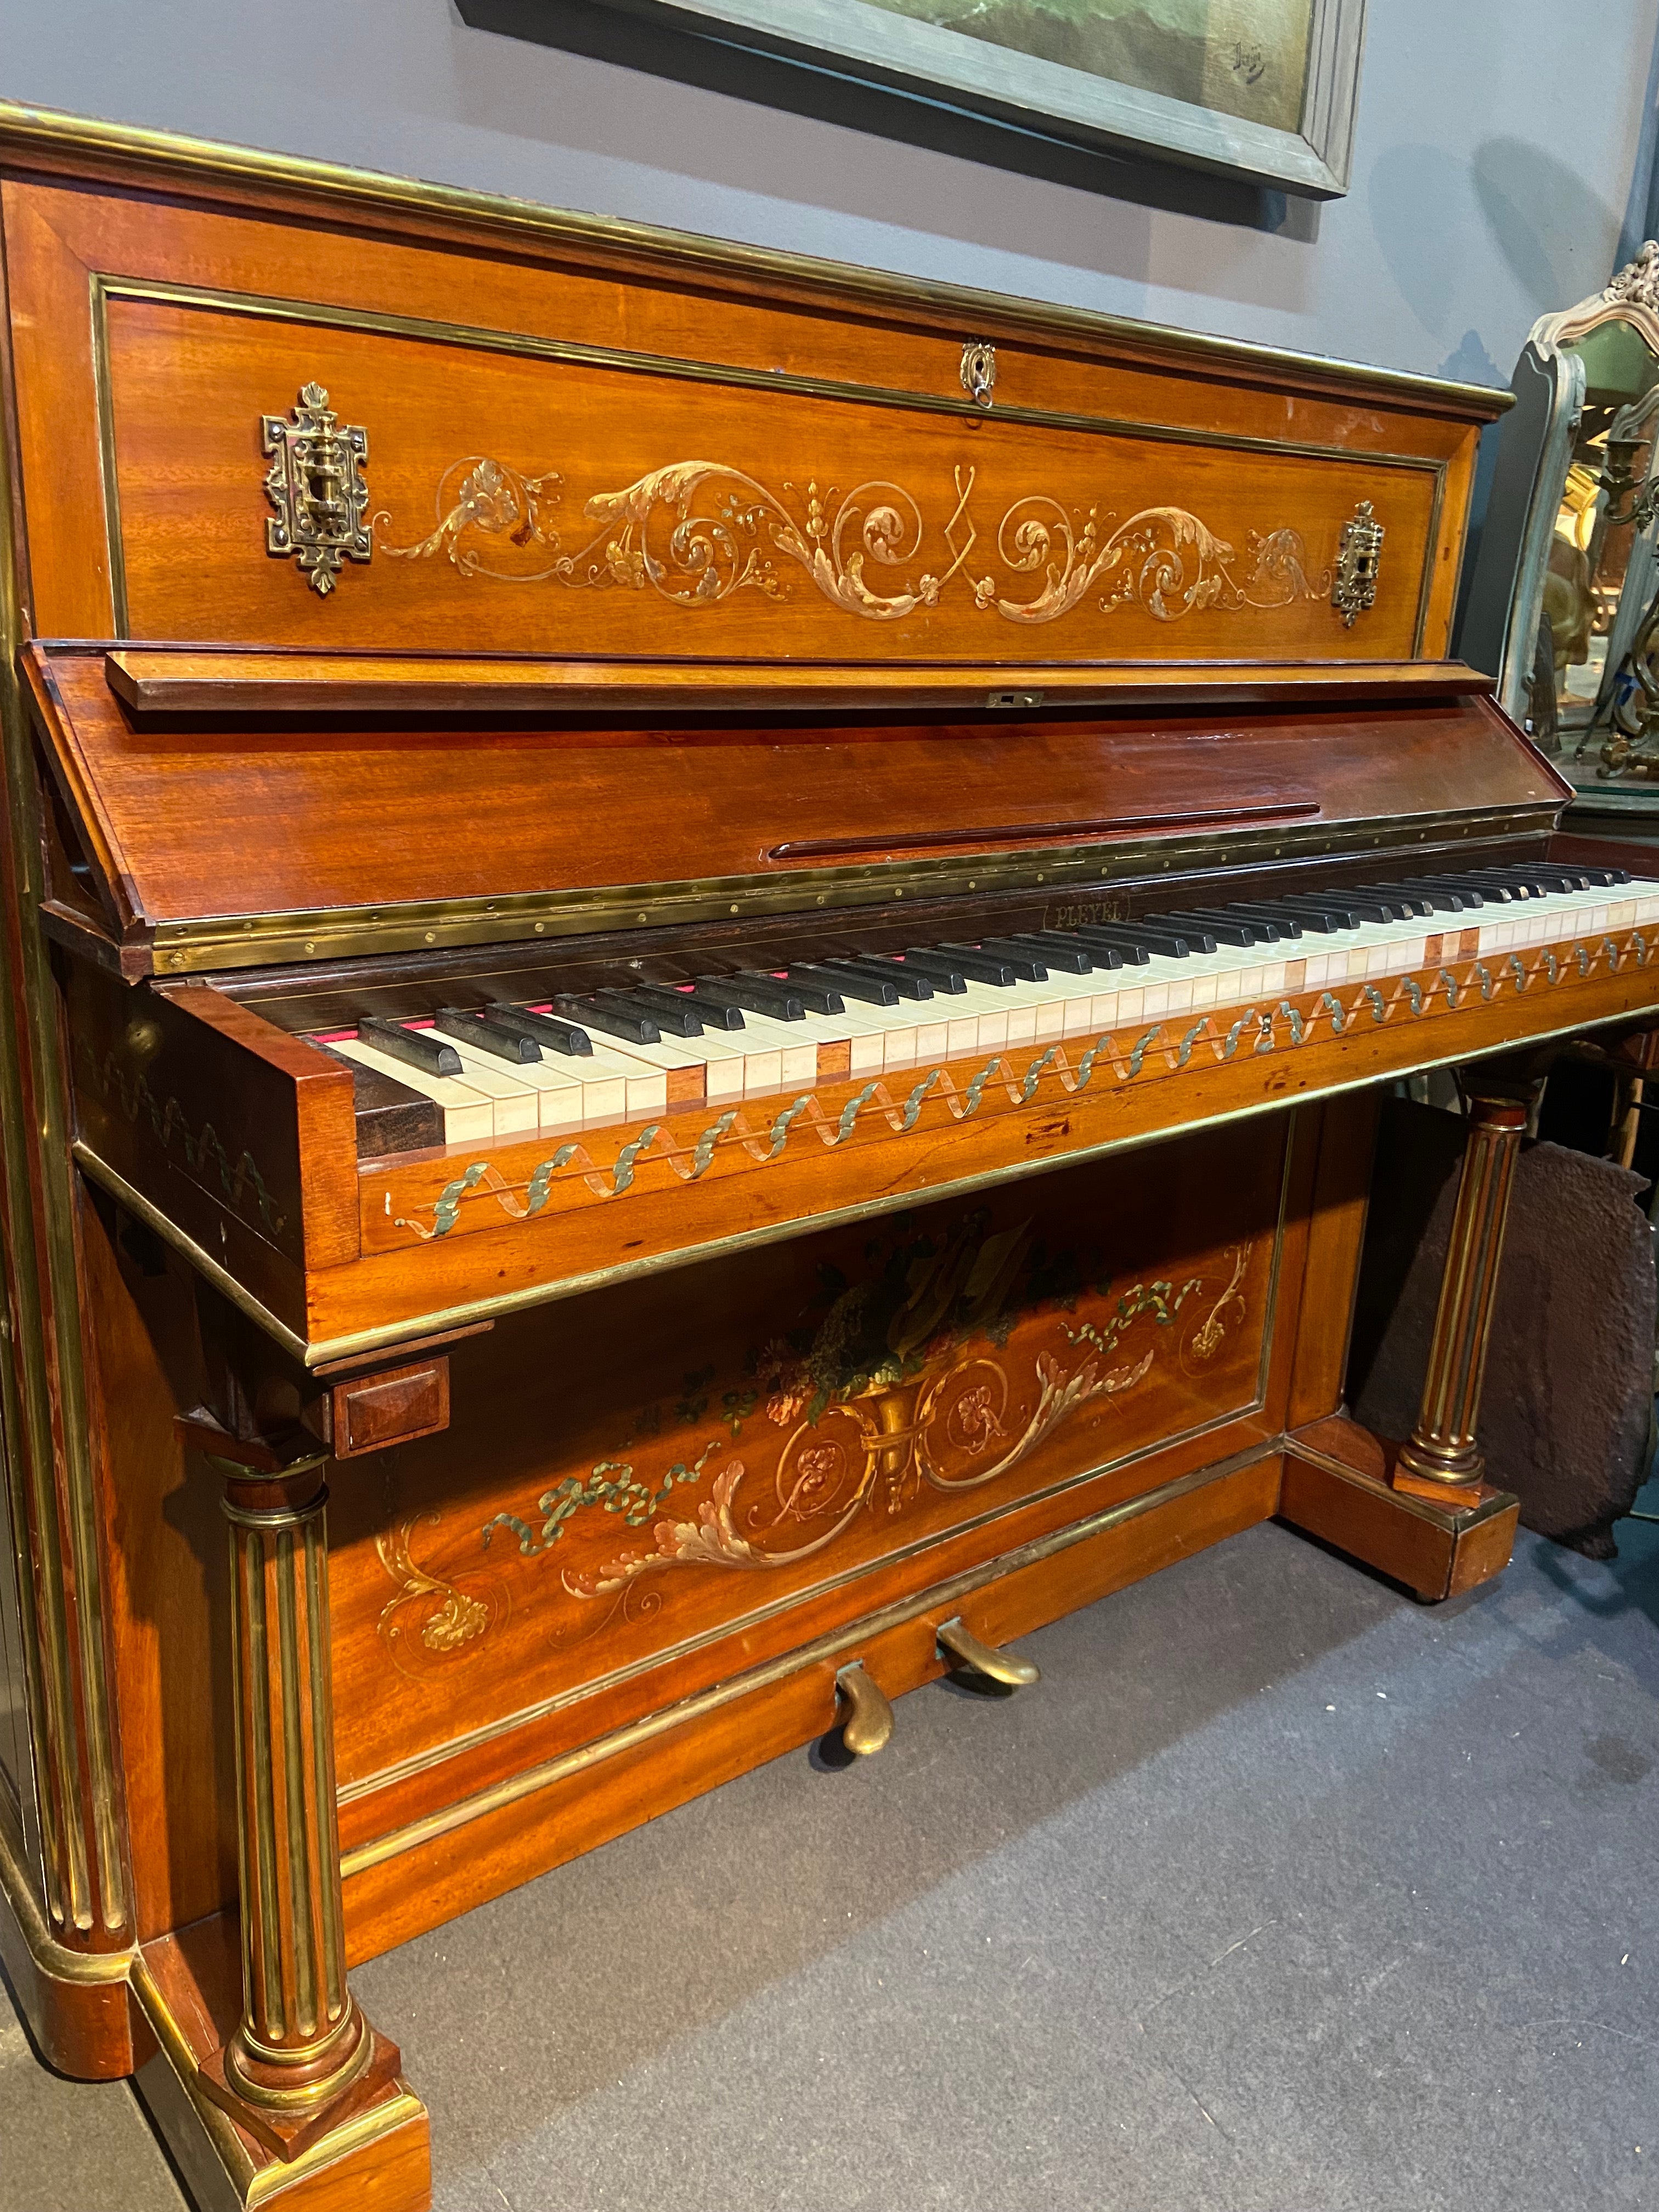 Dieses seltene Klavier wurde laut dem Pleyel-Archiv im Musée de la Musique im September 1871 von Pleyel in Frankreich hergestellt.
Das Gehäuse aus Naturholz ist mit handgemalten Blumengirlanden verziert. Die Seiten des Klaviers sind quadratisch und